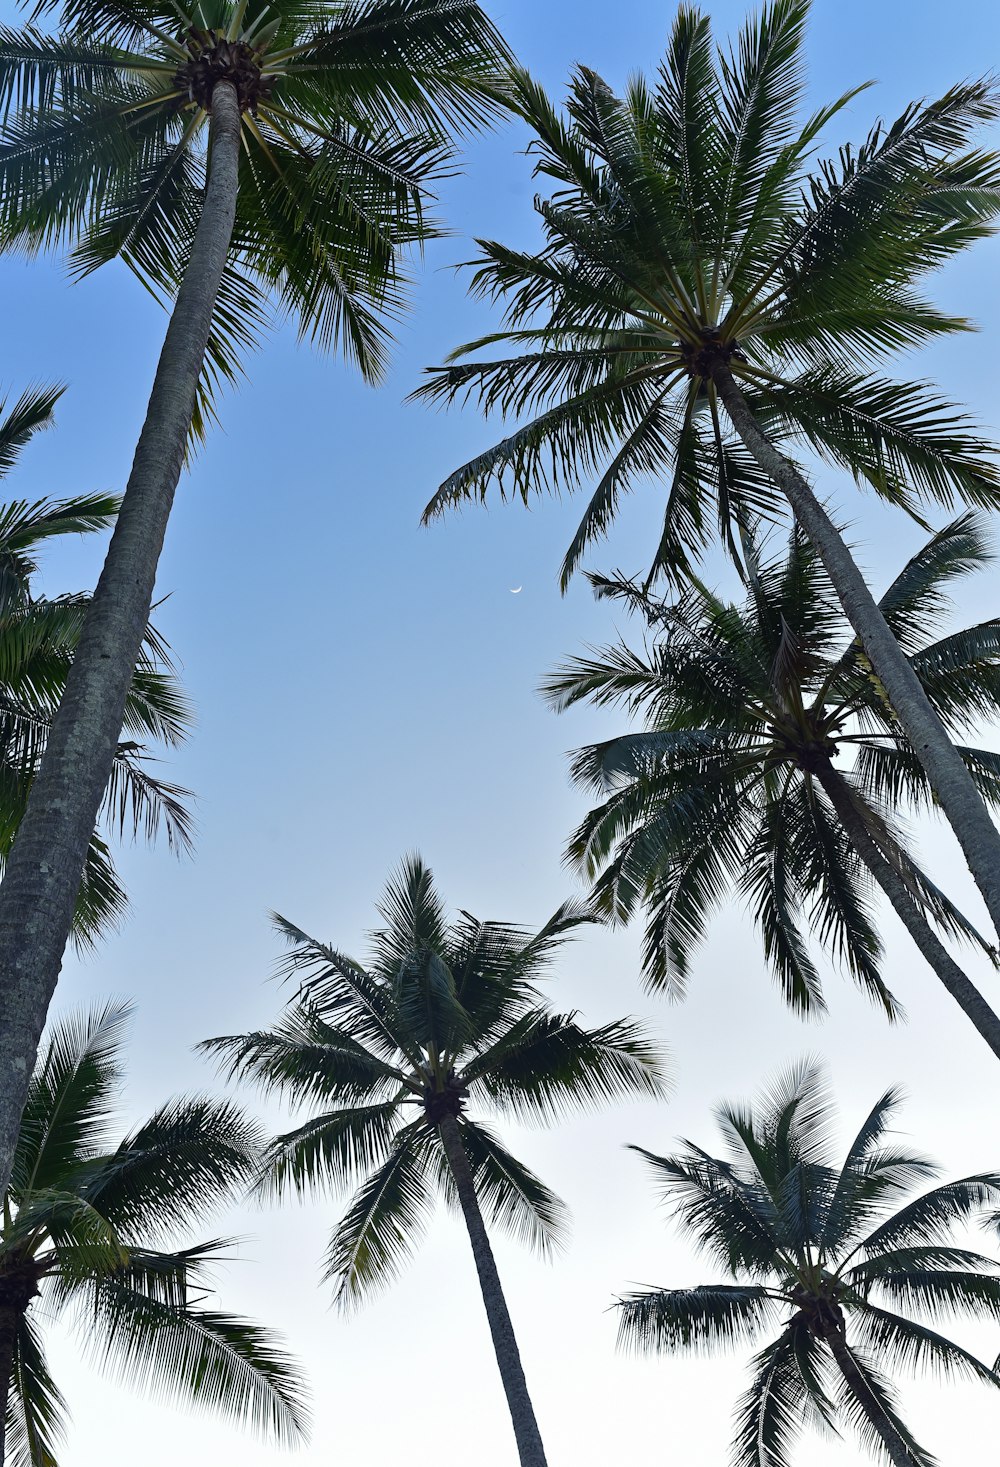 코코넛 나무의 웜 아이 뷰 사진